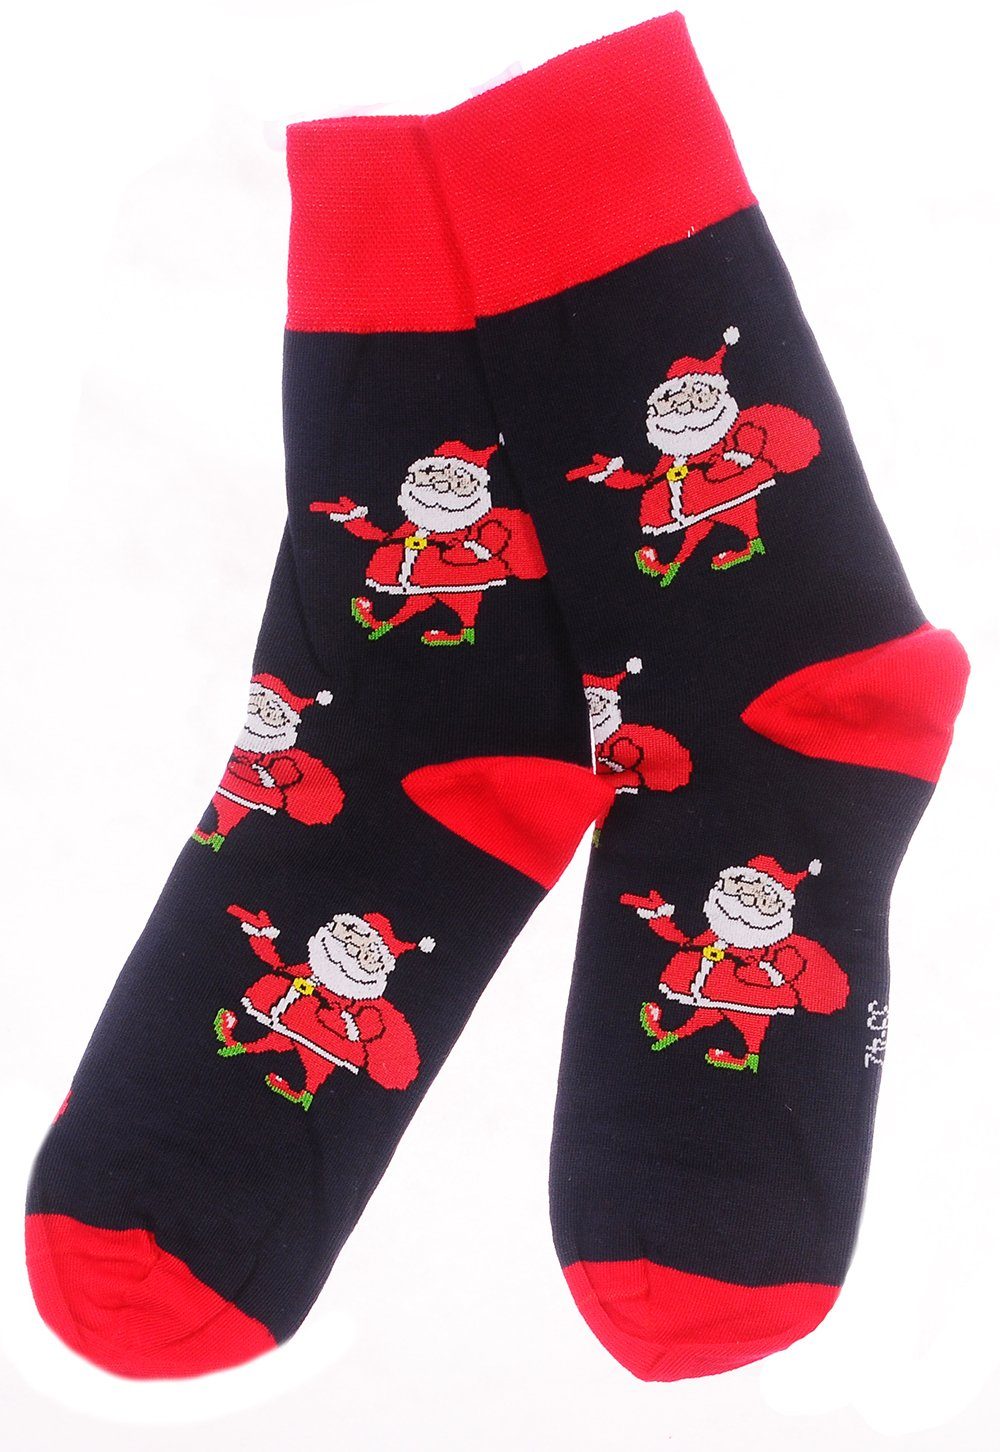 Martinex Socken Socken lustige bunte Strümpfe Damen Herren Kinder Weihnachtssocken | Wintersocken